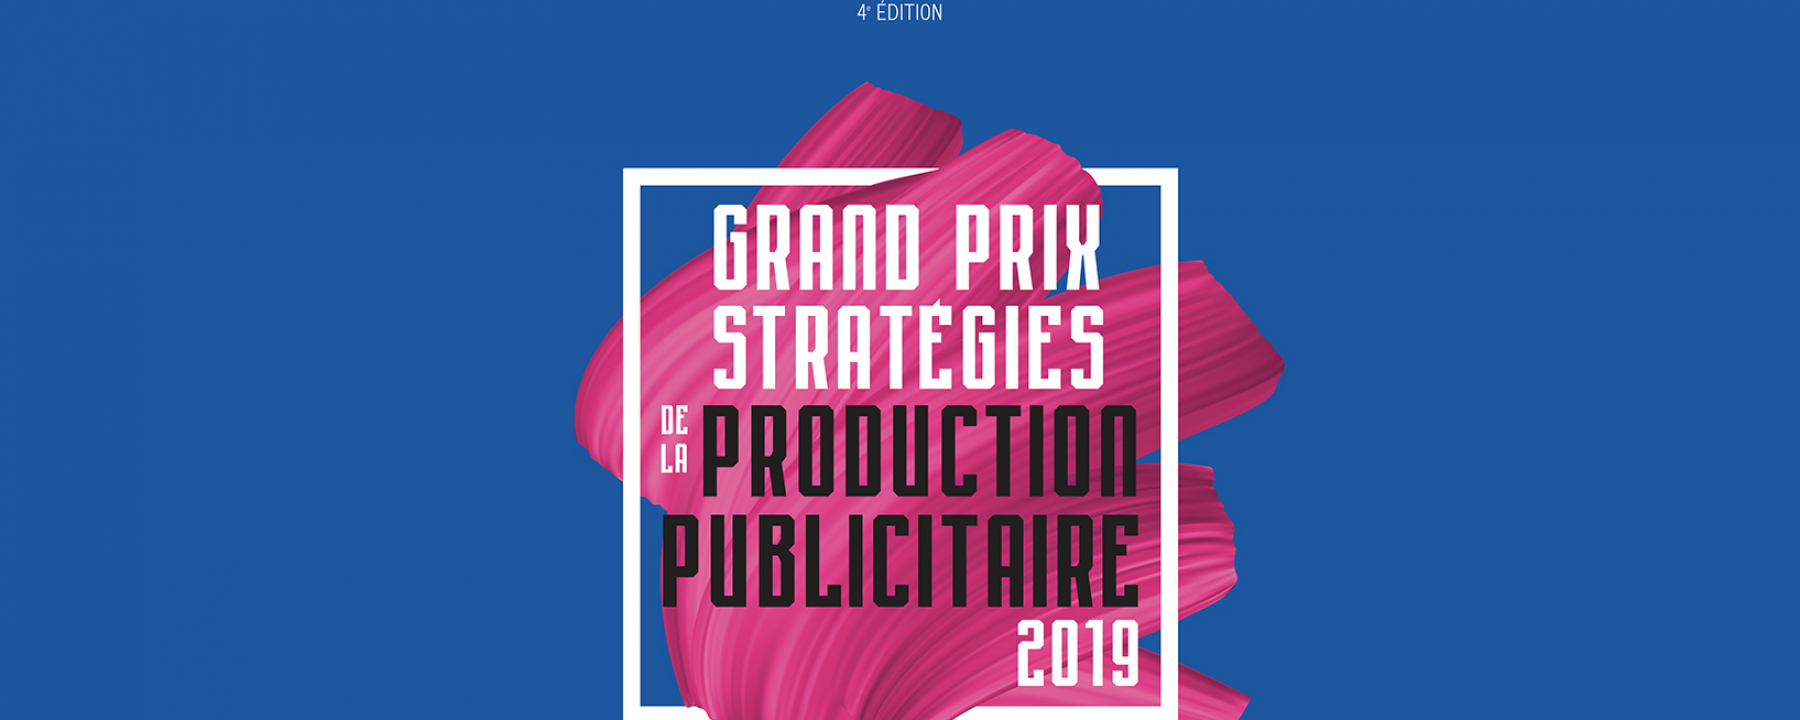 3e Grand Prix Stratégies de la Production Publicitaire